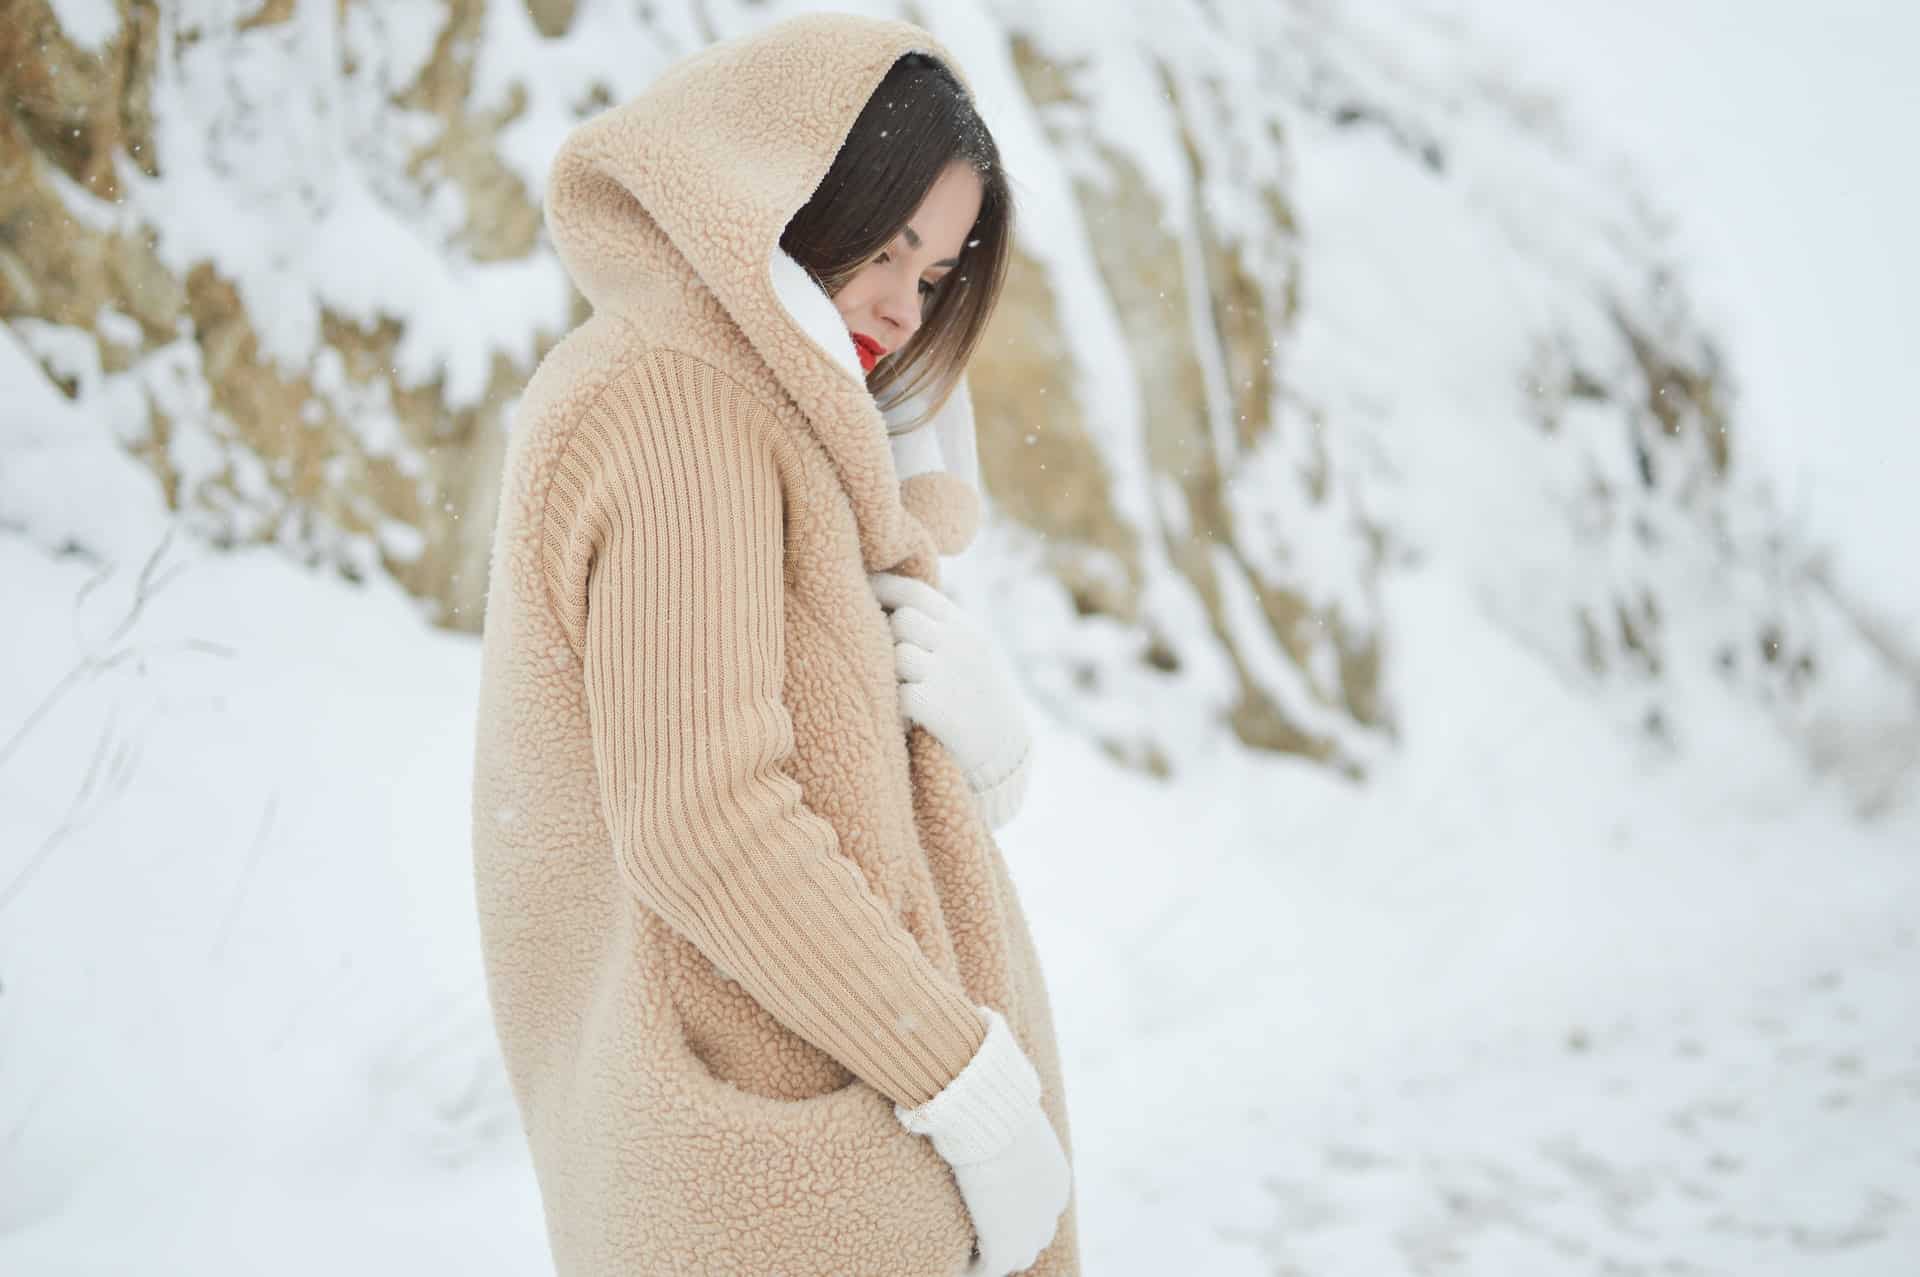 Idealny płaszcz zimowy – w jaki model warto zainwestować?